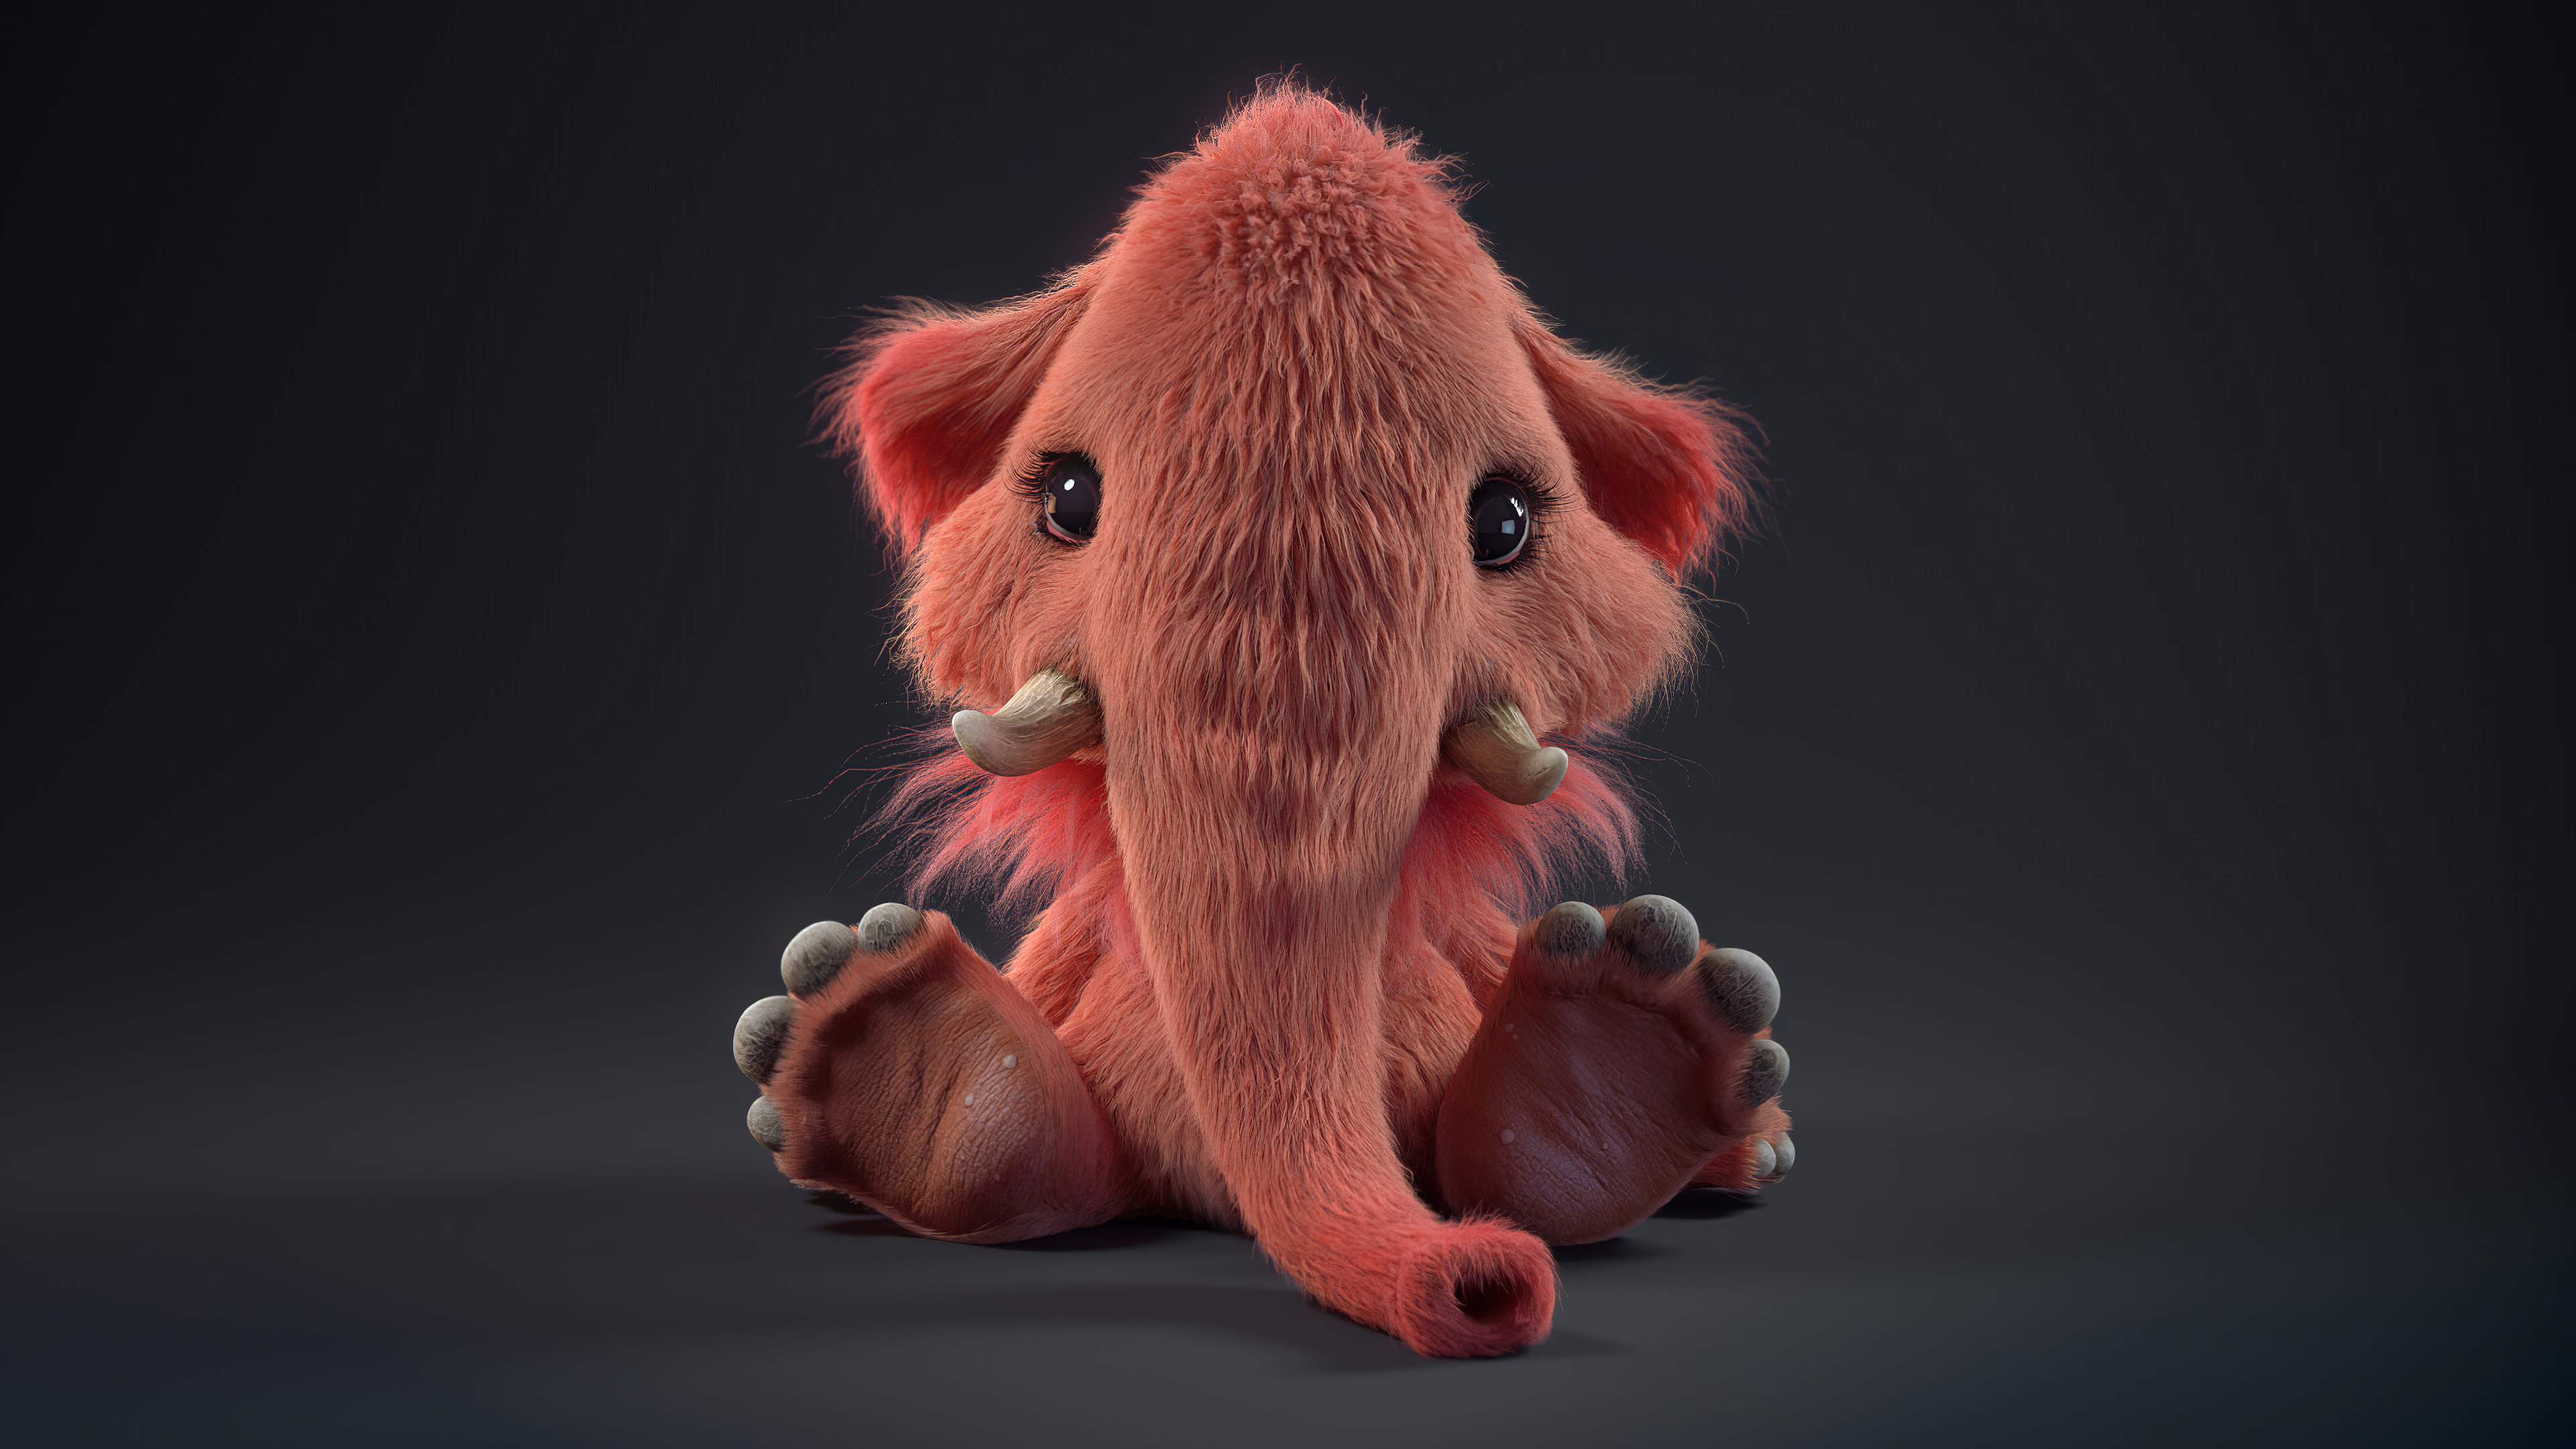 Baby Animal Cute Fluffy Mammoth 3840x2160